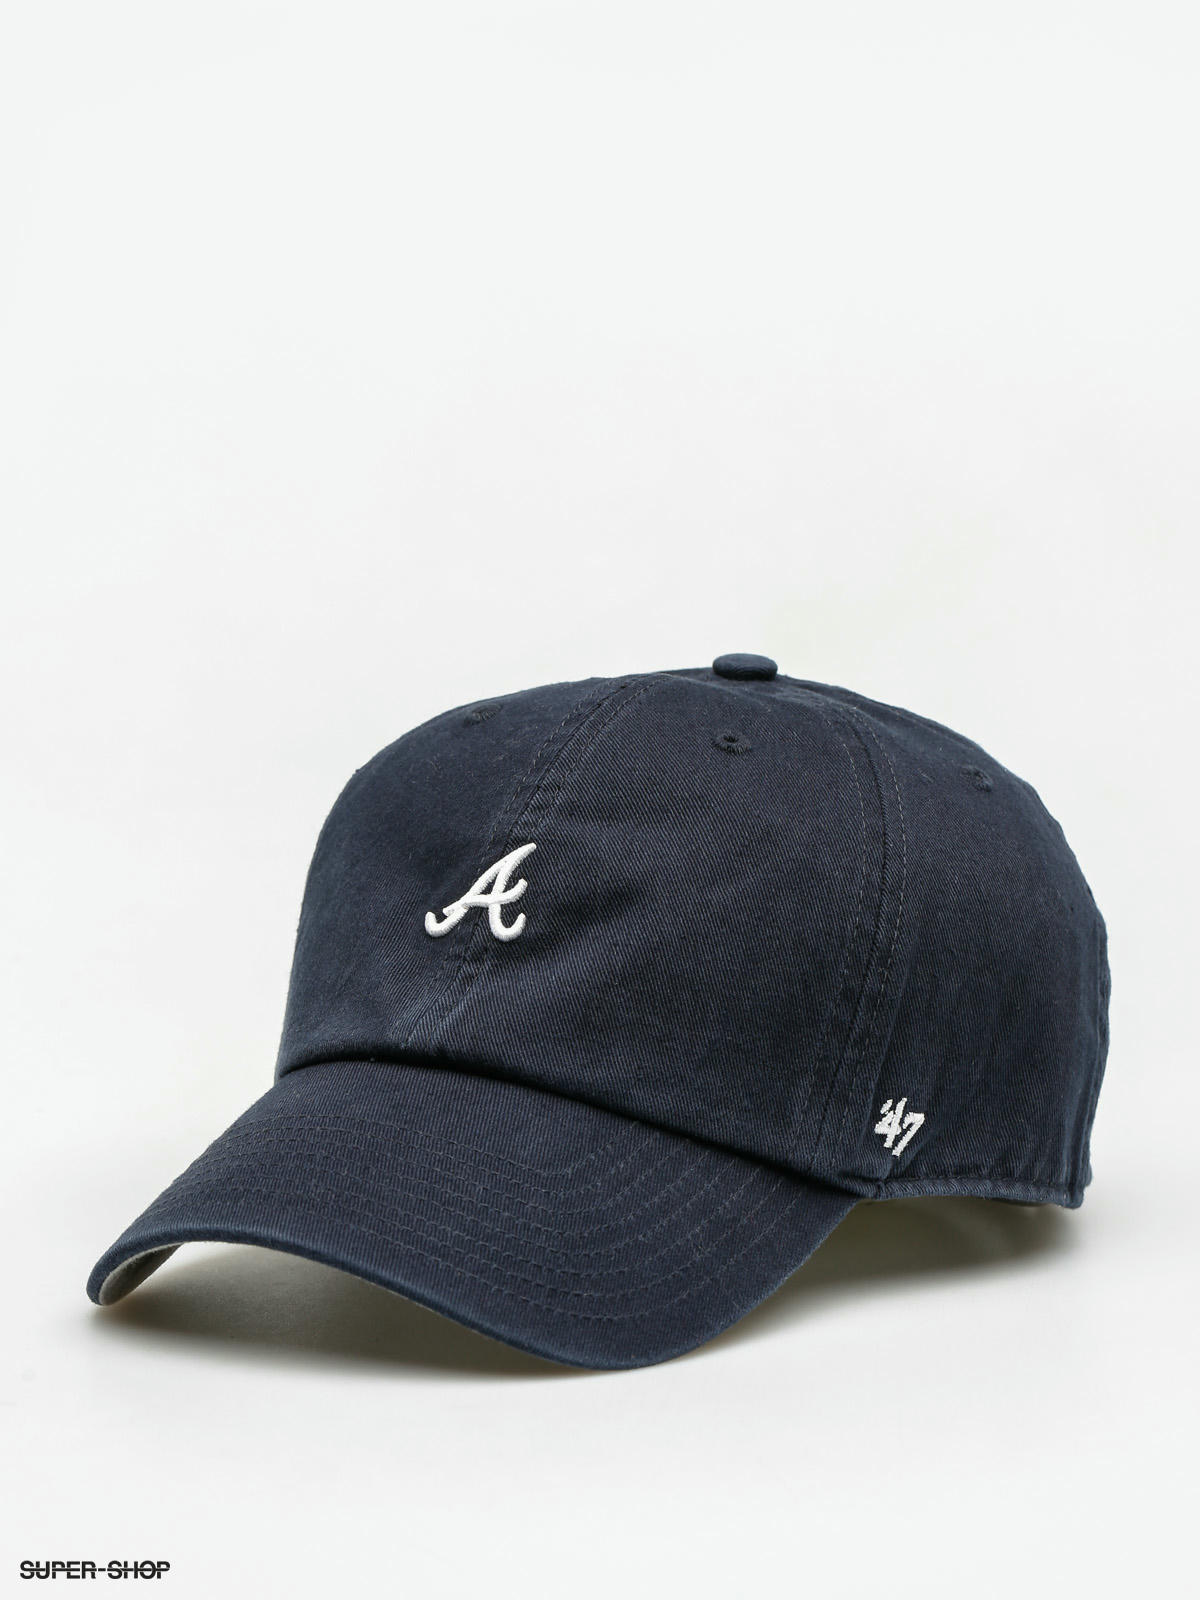 Atlanta Braves - Navy Trucker Hat, 47 Brand